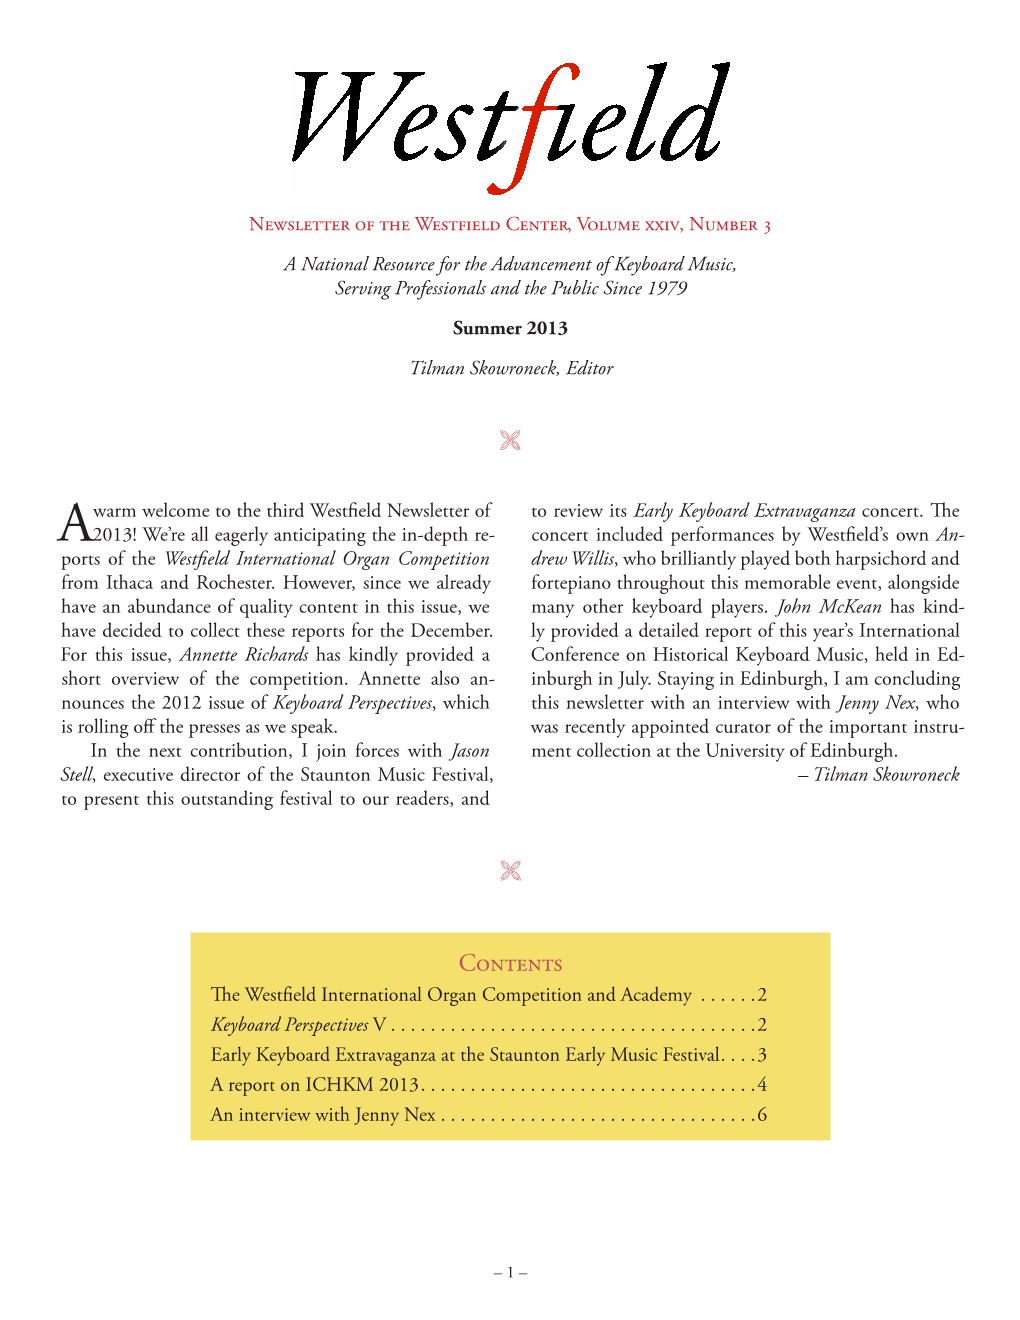 Westfield Newsletter, Vol. XXIV, No. 3, Summer 2013